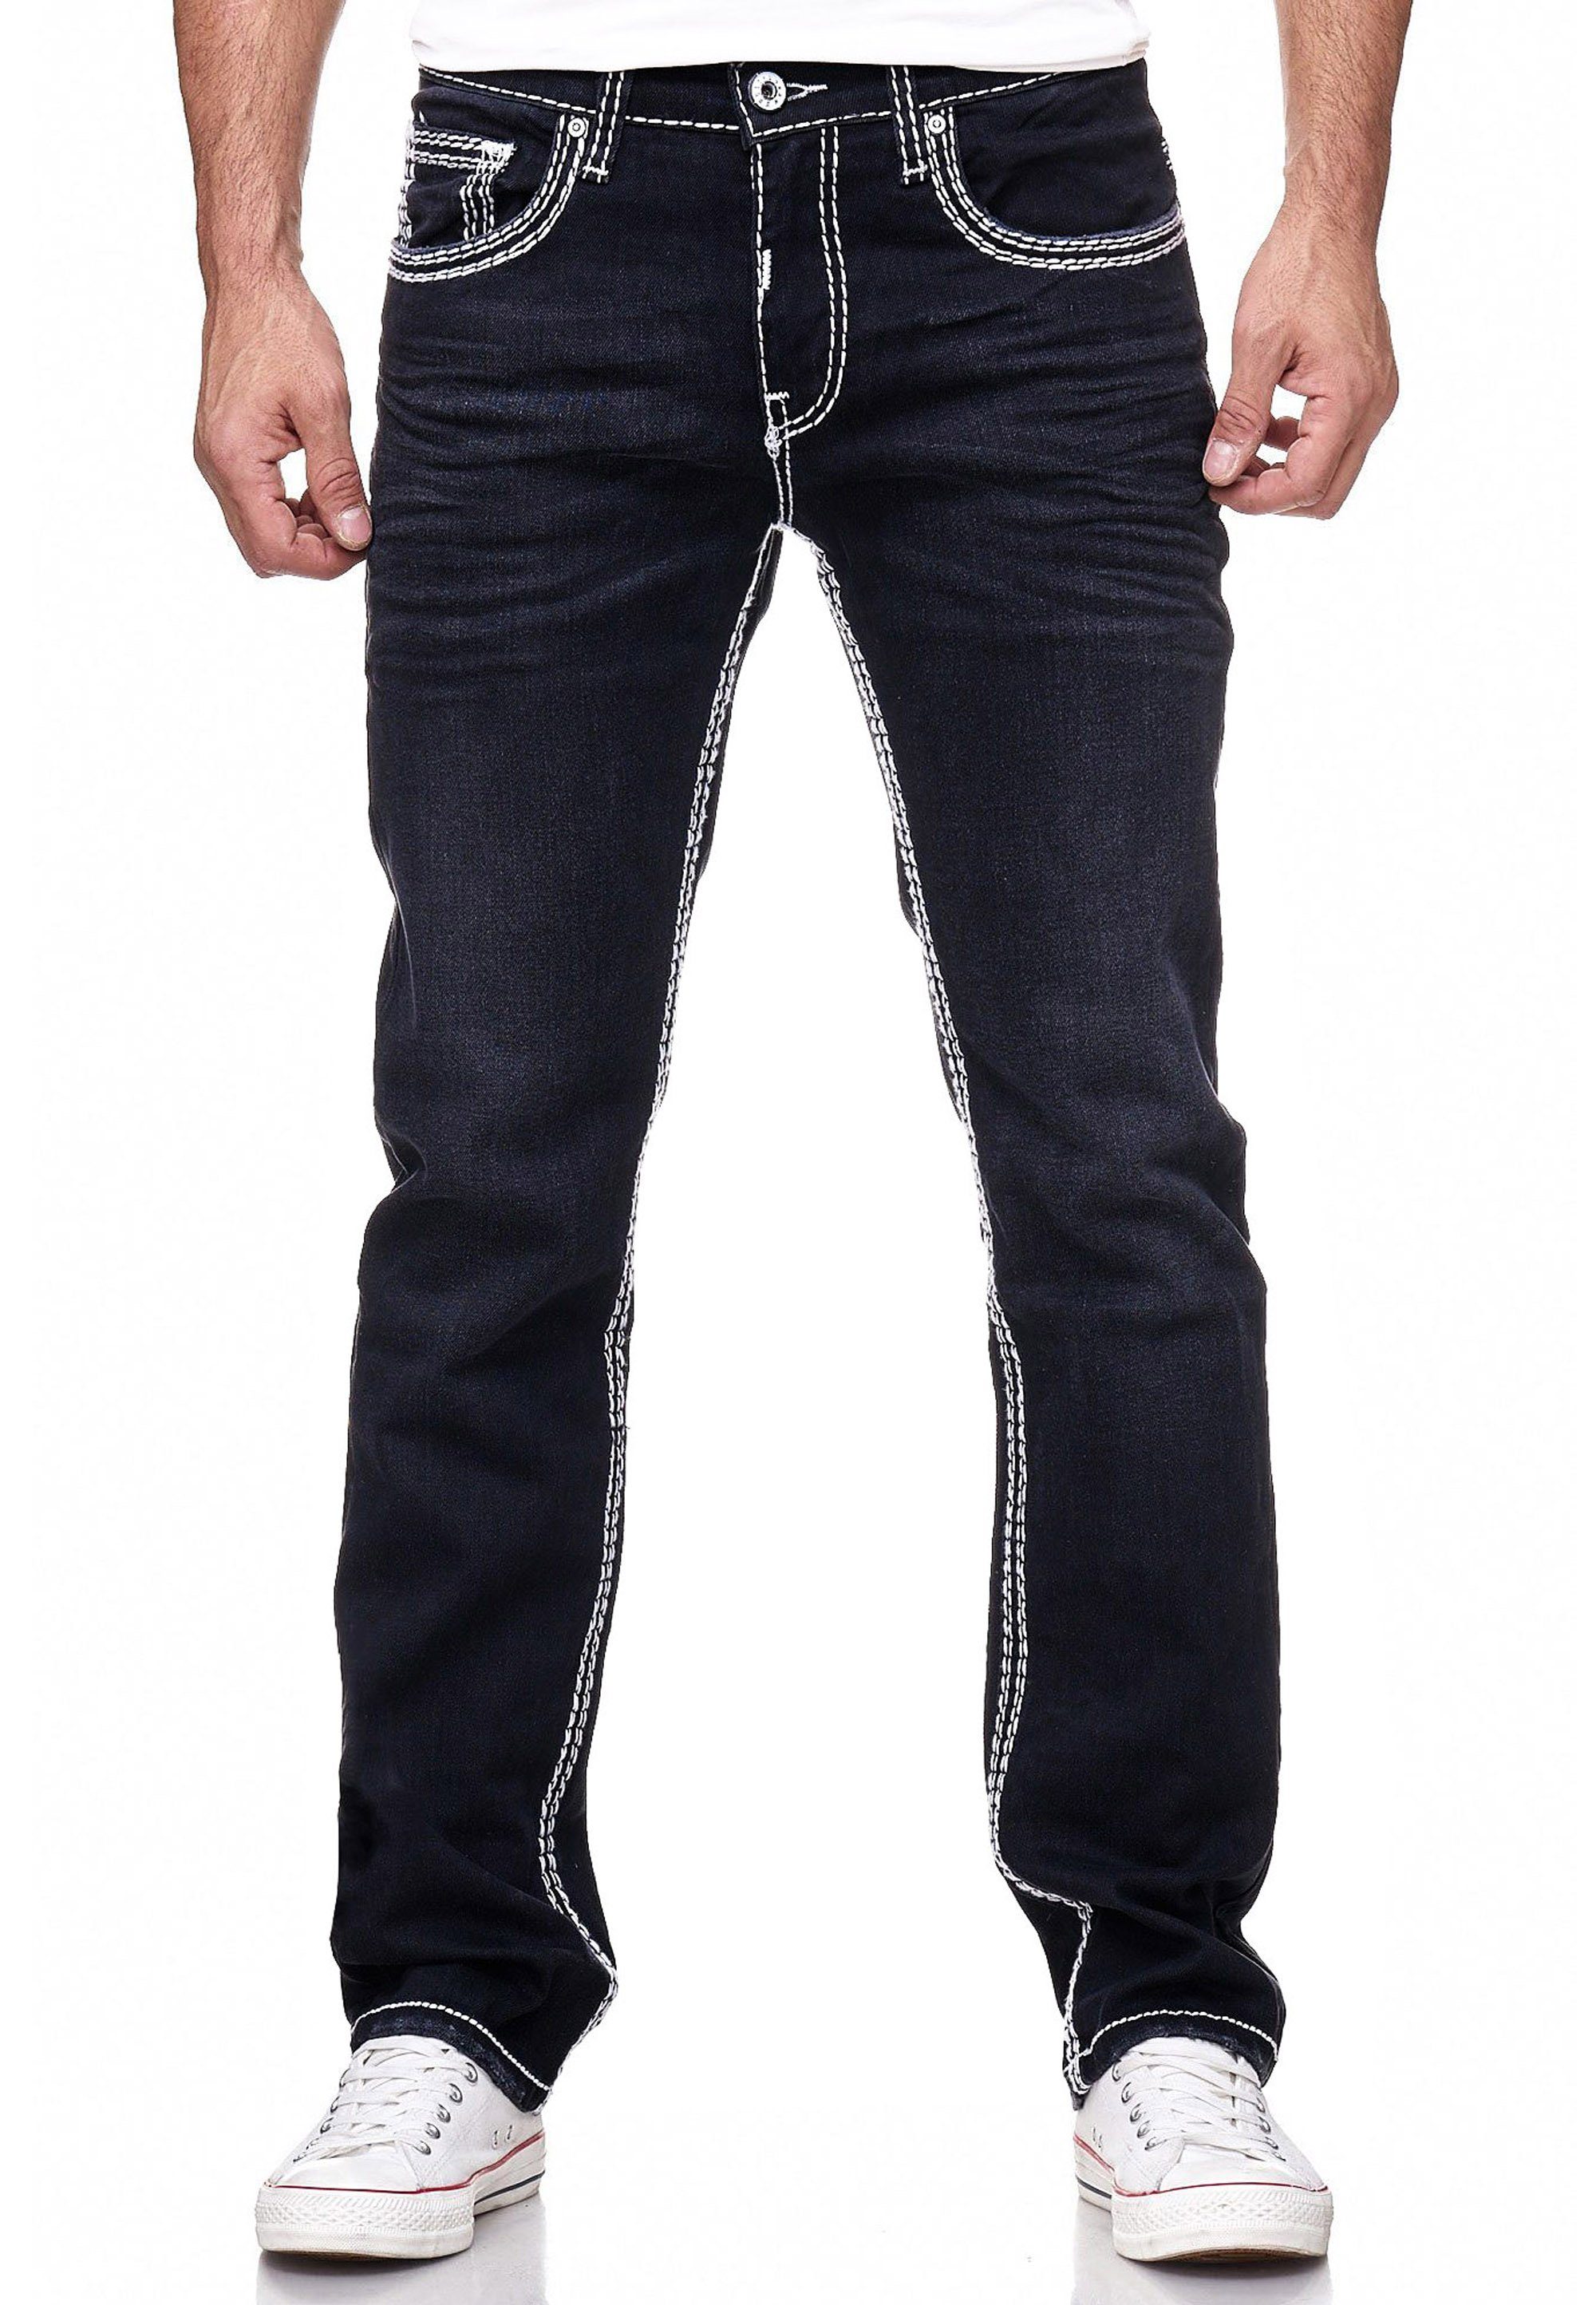 Rusty Neal Straight-Jeans LEVIN 7 mit trendigen Kontrastnähten | Straight-Fit Jeans